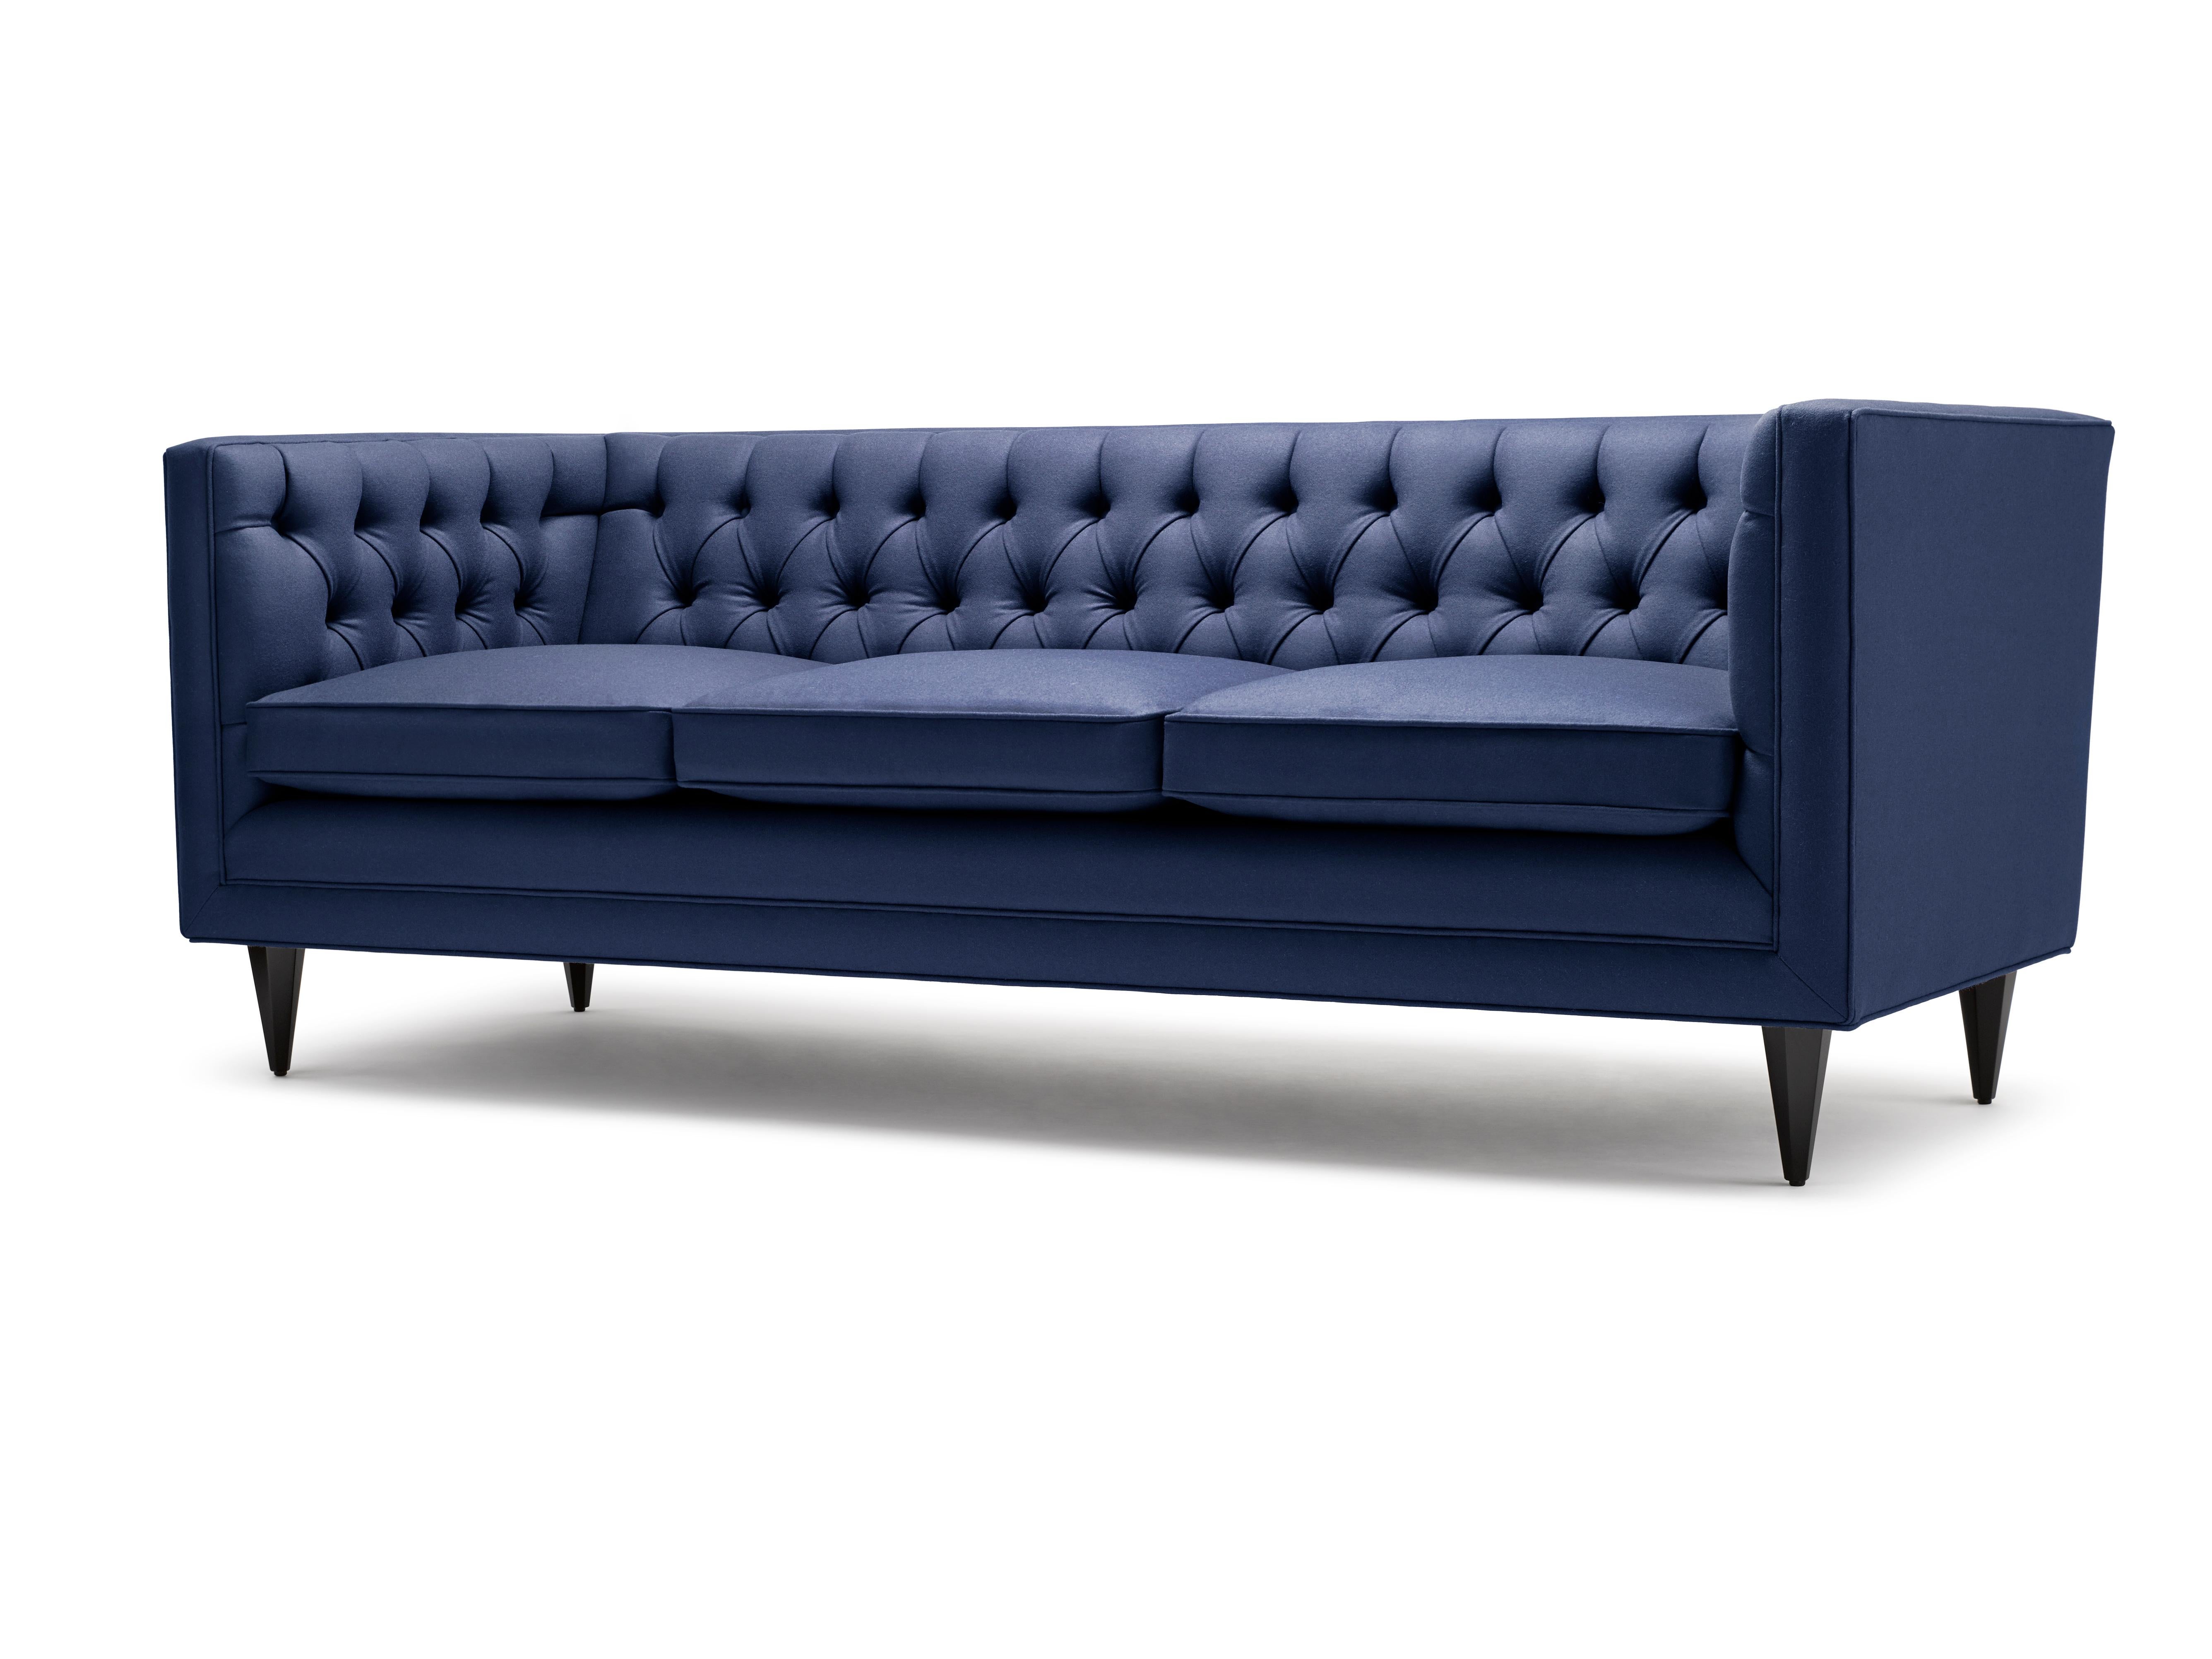 Das Tux Lux-Sofa ergänzt die bereits etablierte Tux-Reihe. Das zusätzliche, mit Federn und Daunen umhüllte Sitzkissen macht das Design noch weicher, während die formalen Linien erhalten bleiben.

Konstruktion: Massiver Buchenrahmen mit